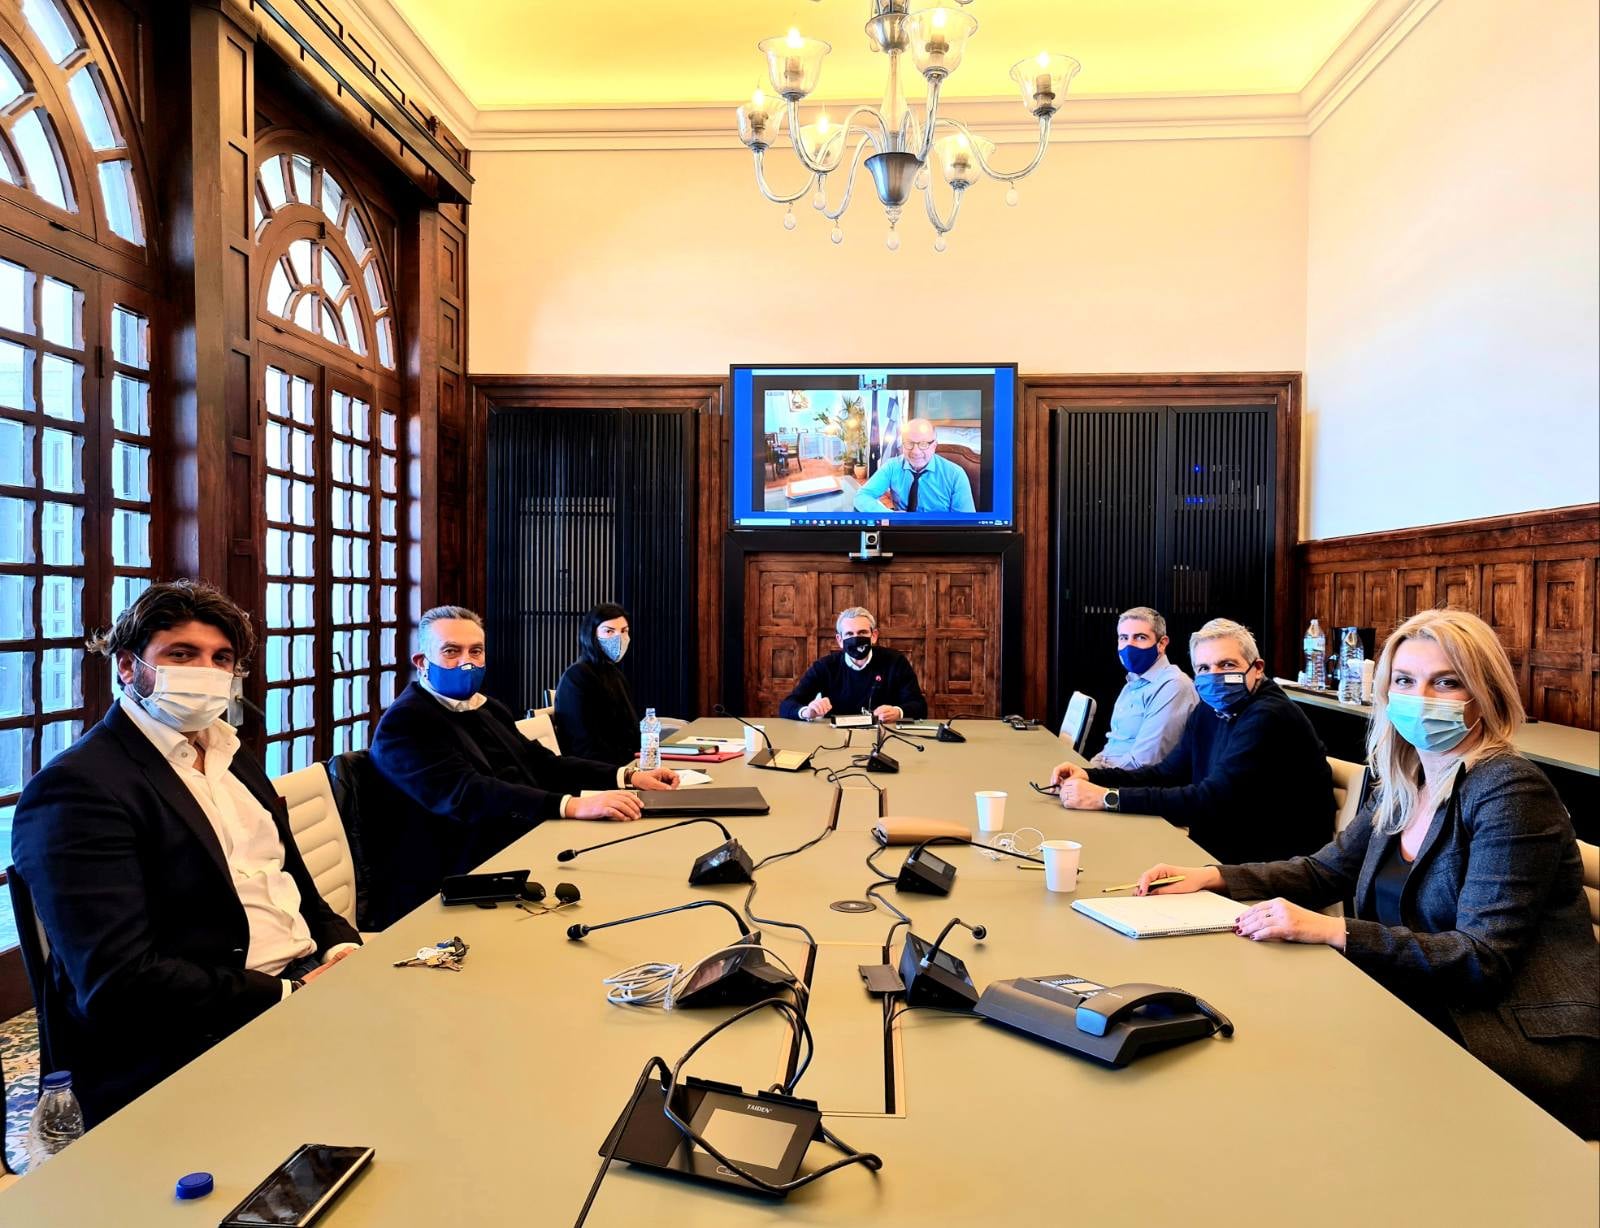 1η συνεδρίαση του Διοικητικού Συμβουλίου της εταιρείας "Κ2 Α.Ε. - Αναπτυξιακός Οργανισμός Περιφέρειας Ν. Αιγαίου"